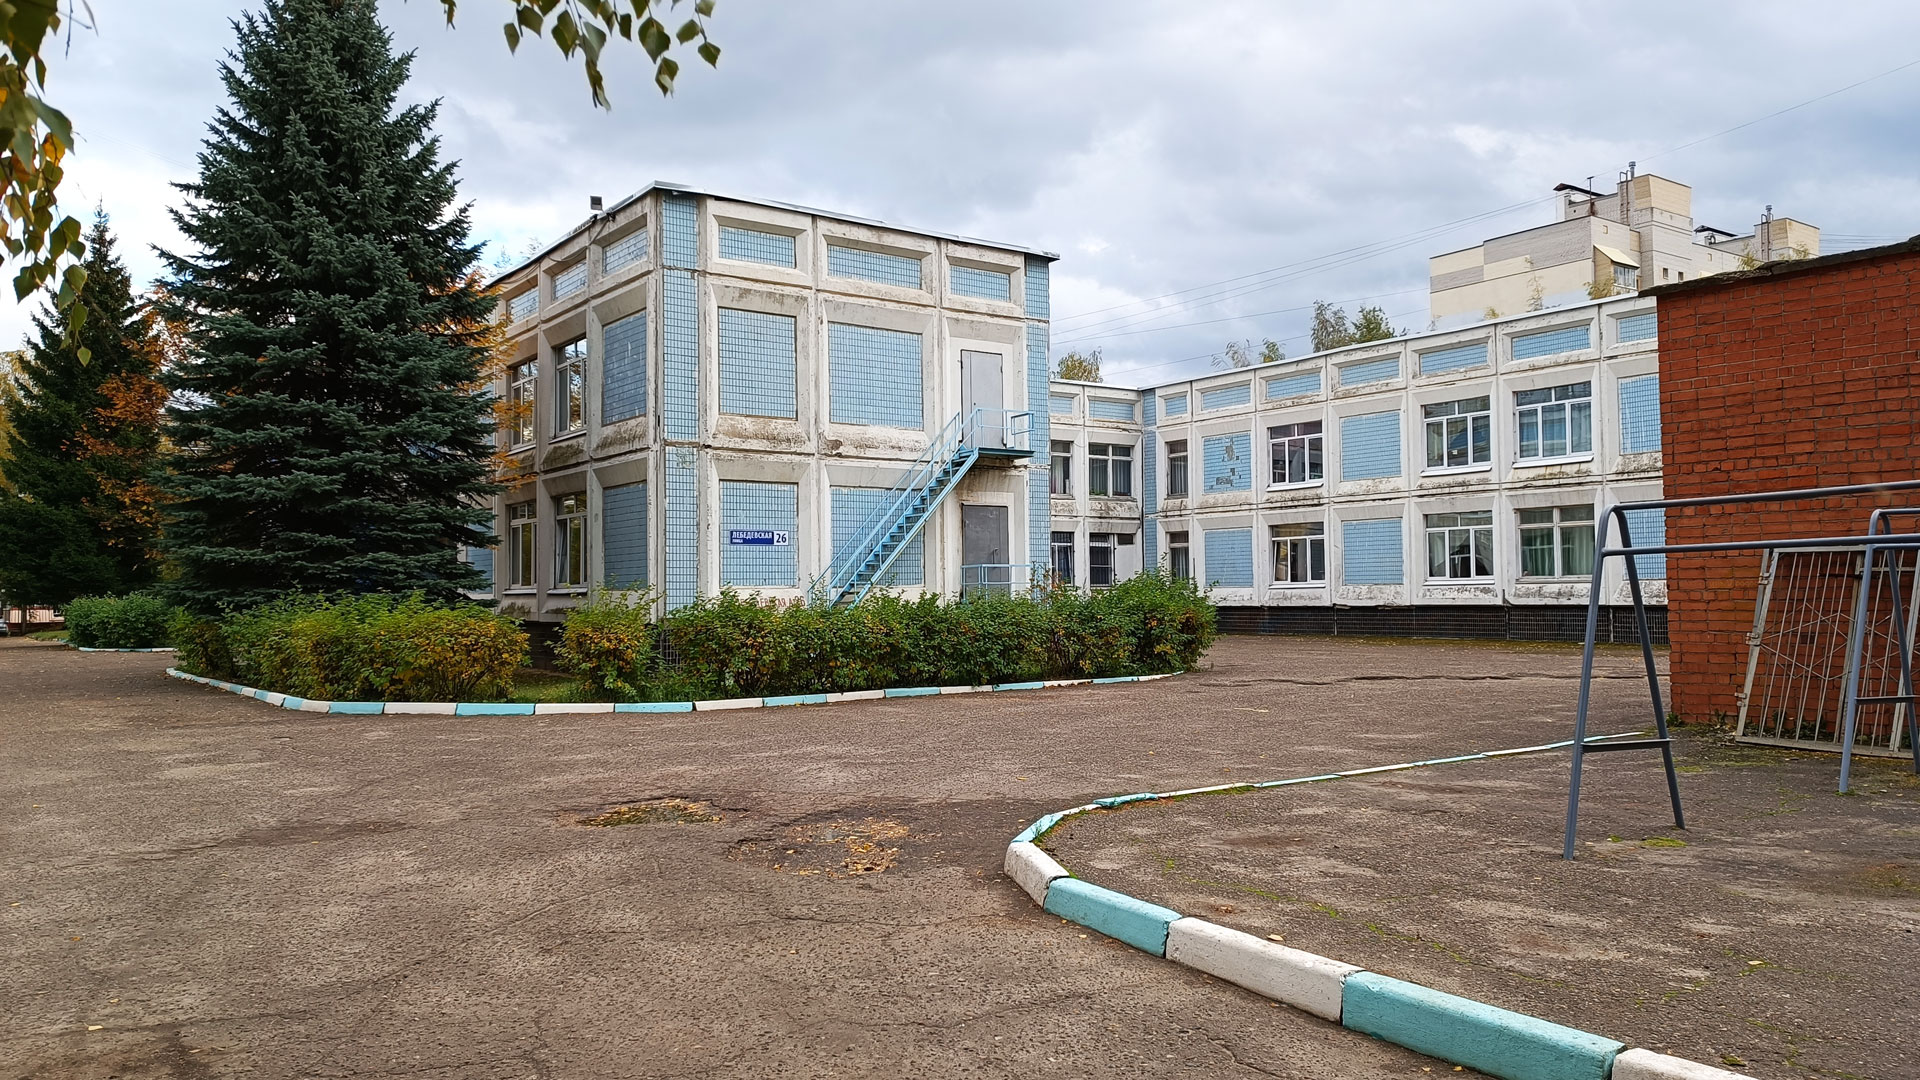 Детский сад 99 Ярославль: общий вид здания.